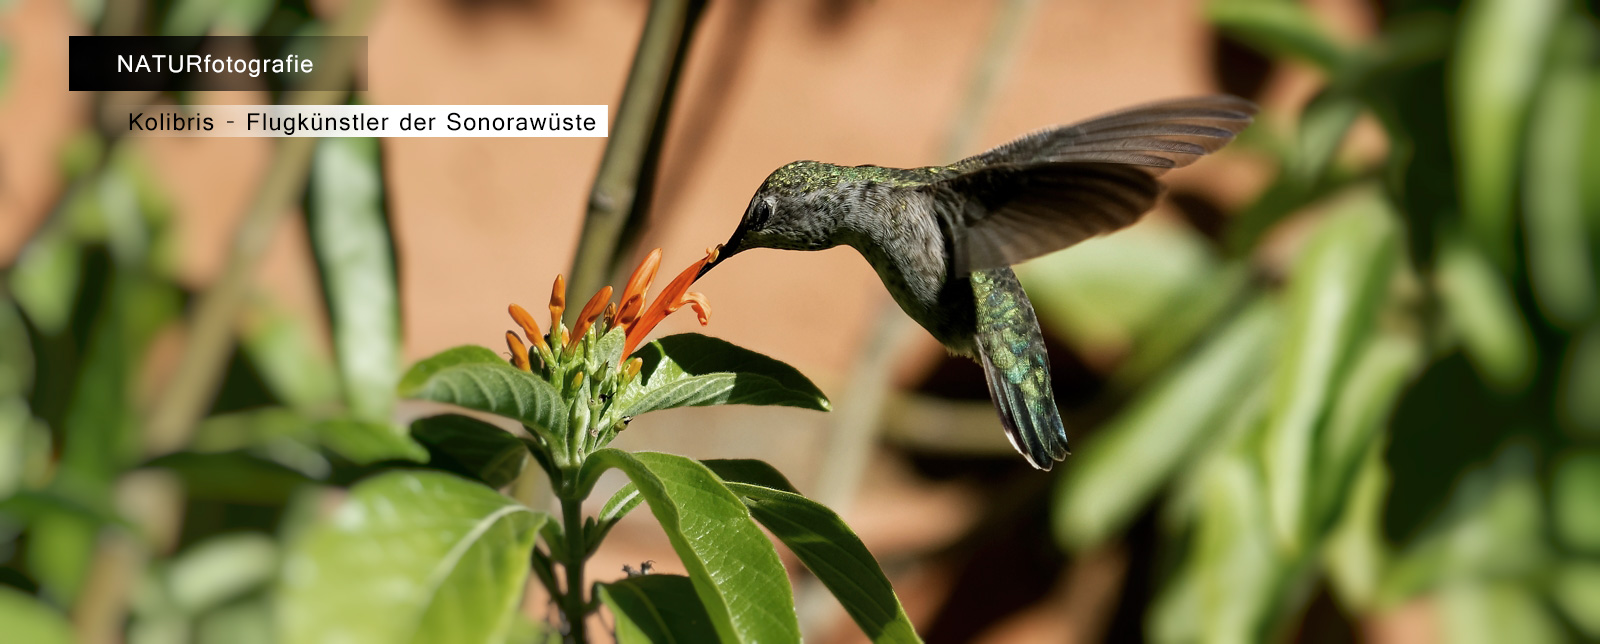 Kolibris - Flugkünstler der Sonora-Wüste